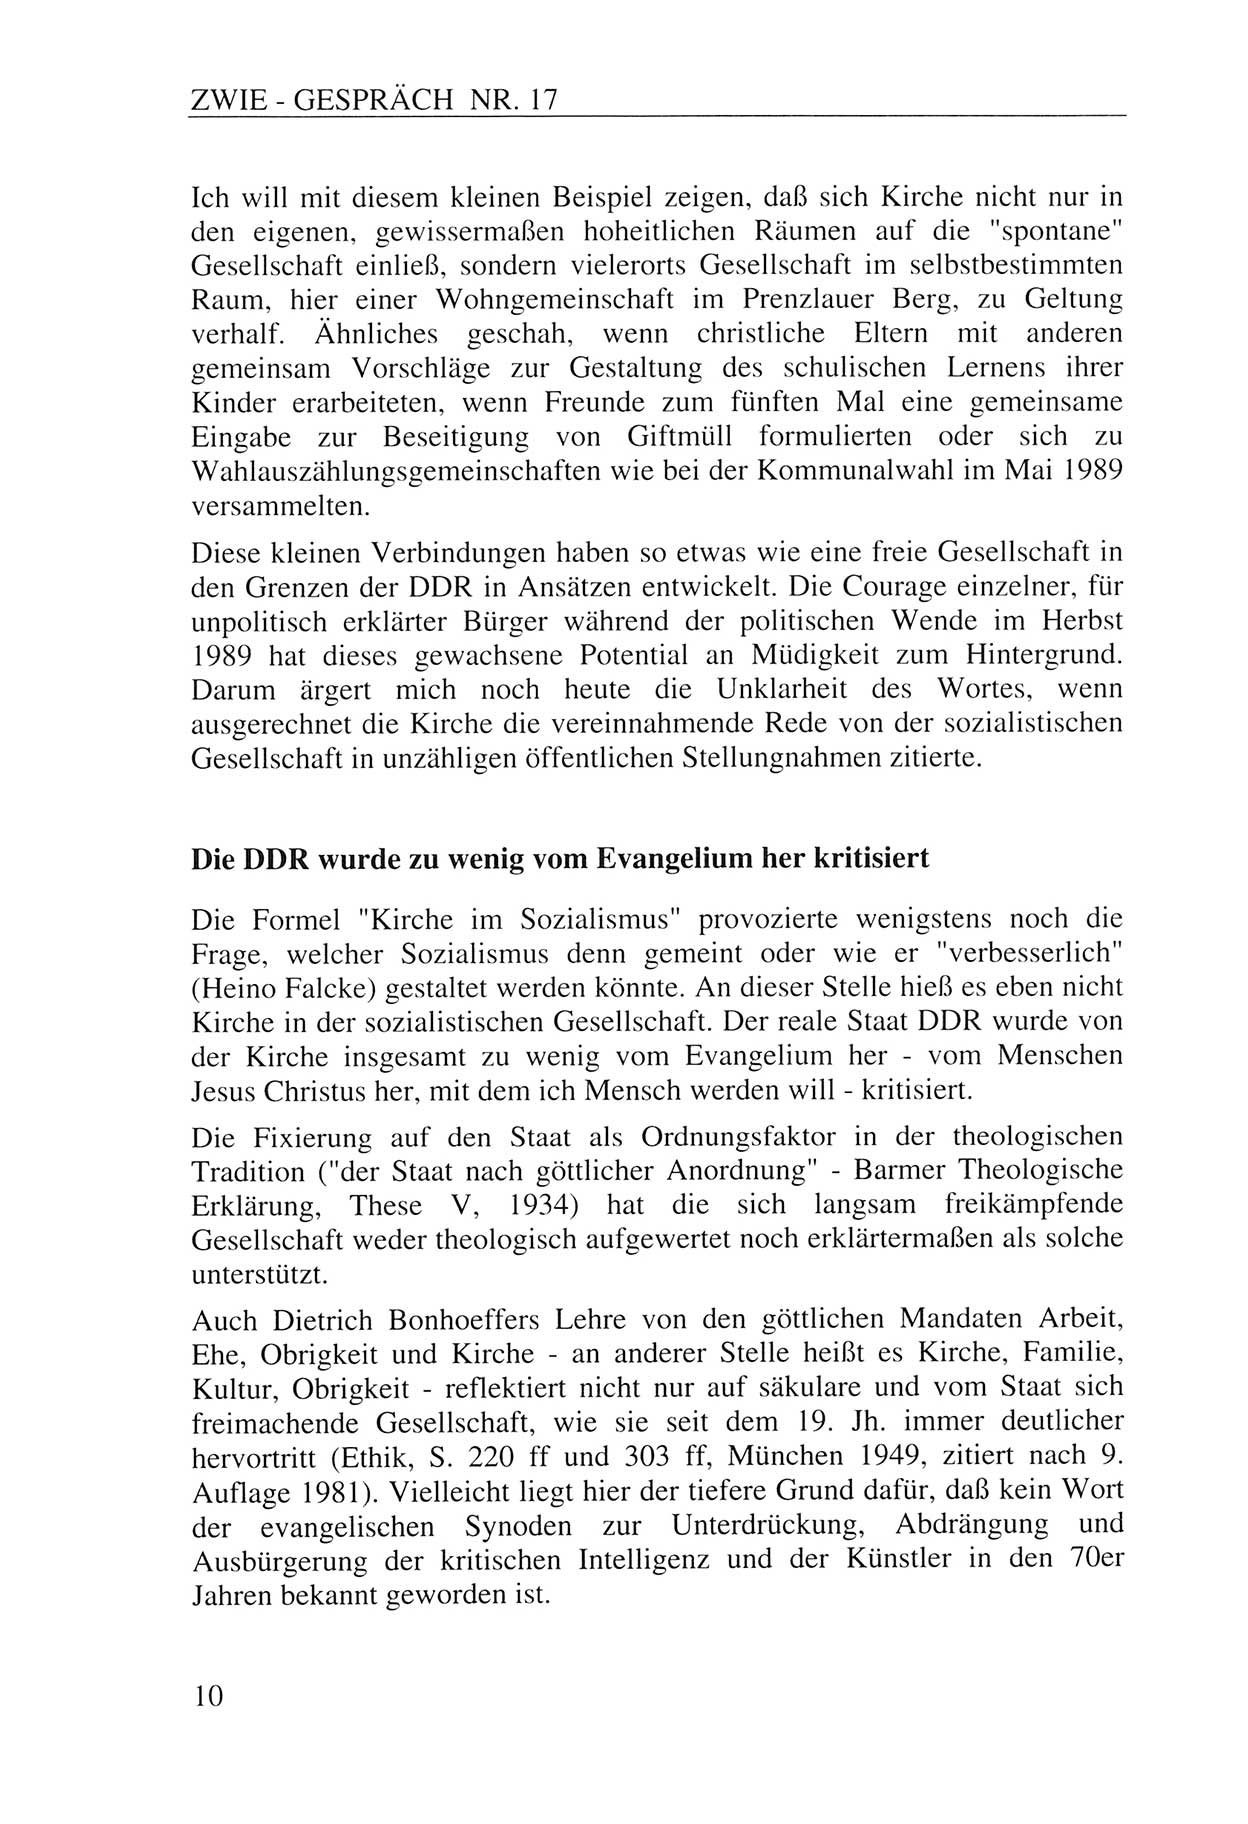 Zwie-Gespräch, Beiträge zur Aufarbeitung der Staatssicherheits-Vergangenheit [Deutsche Demokratische Republik (DDR)], Ausgabe Nr. 17, Berlin 1993, Seite 10 (Zwie-Gespr. Ausg. 17 1993, S. 10)